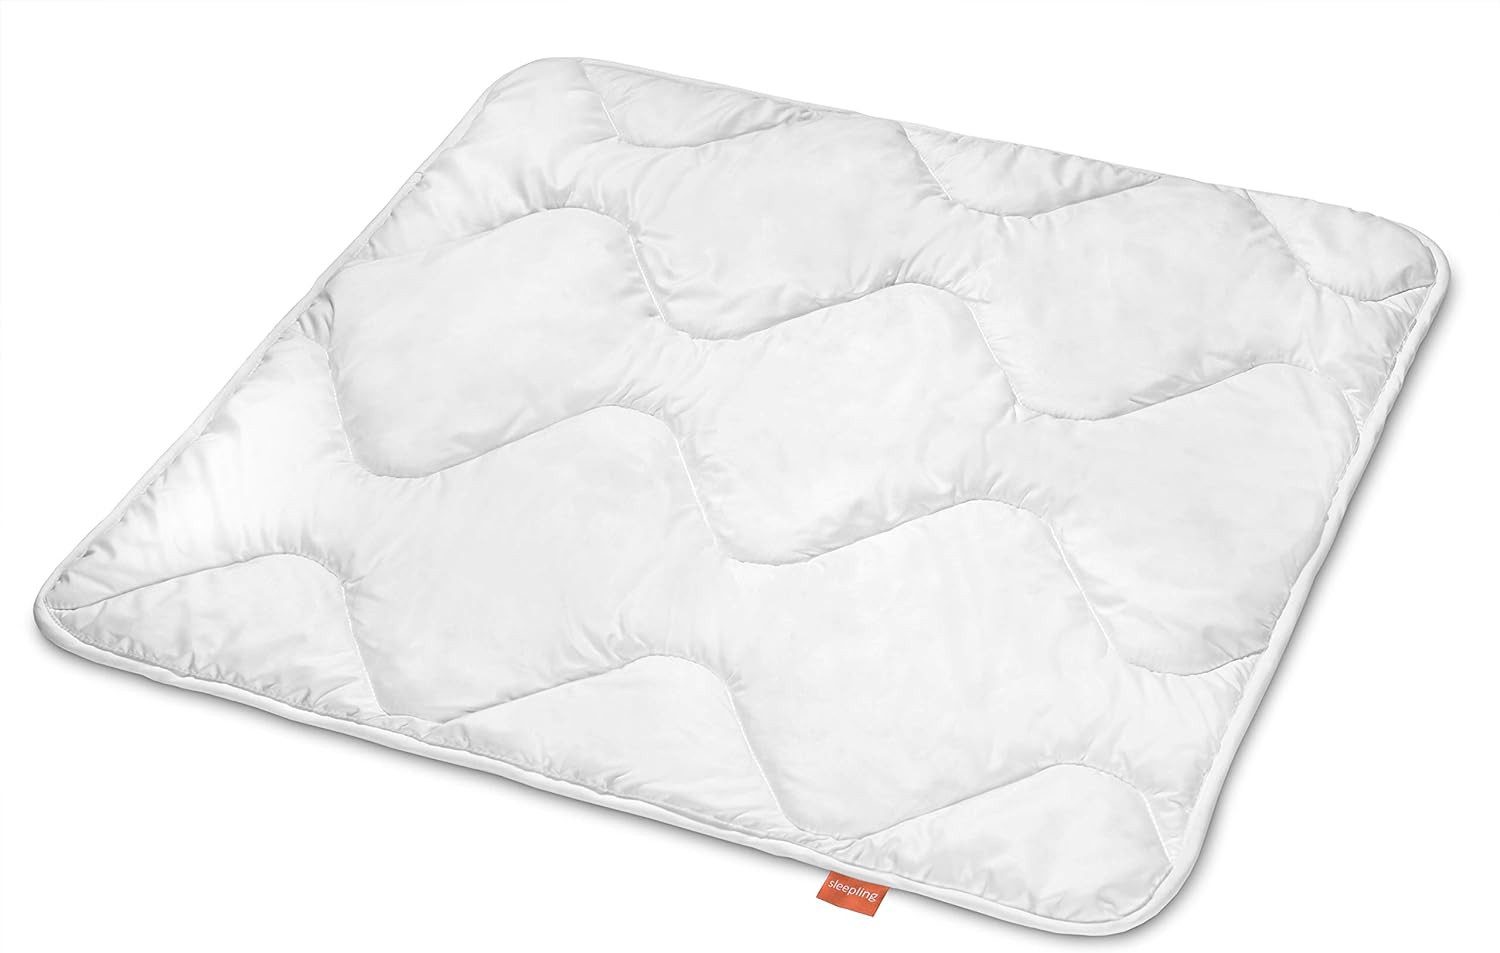 Babybettdecke, Kinder Bettdecke, sleepling, Füllung: Polyester, Bezug: Polyester, aus ultrasoftem und allergikerfreundlichem Material, für guten Schlaf